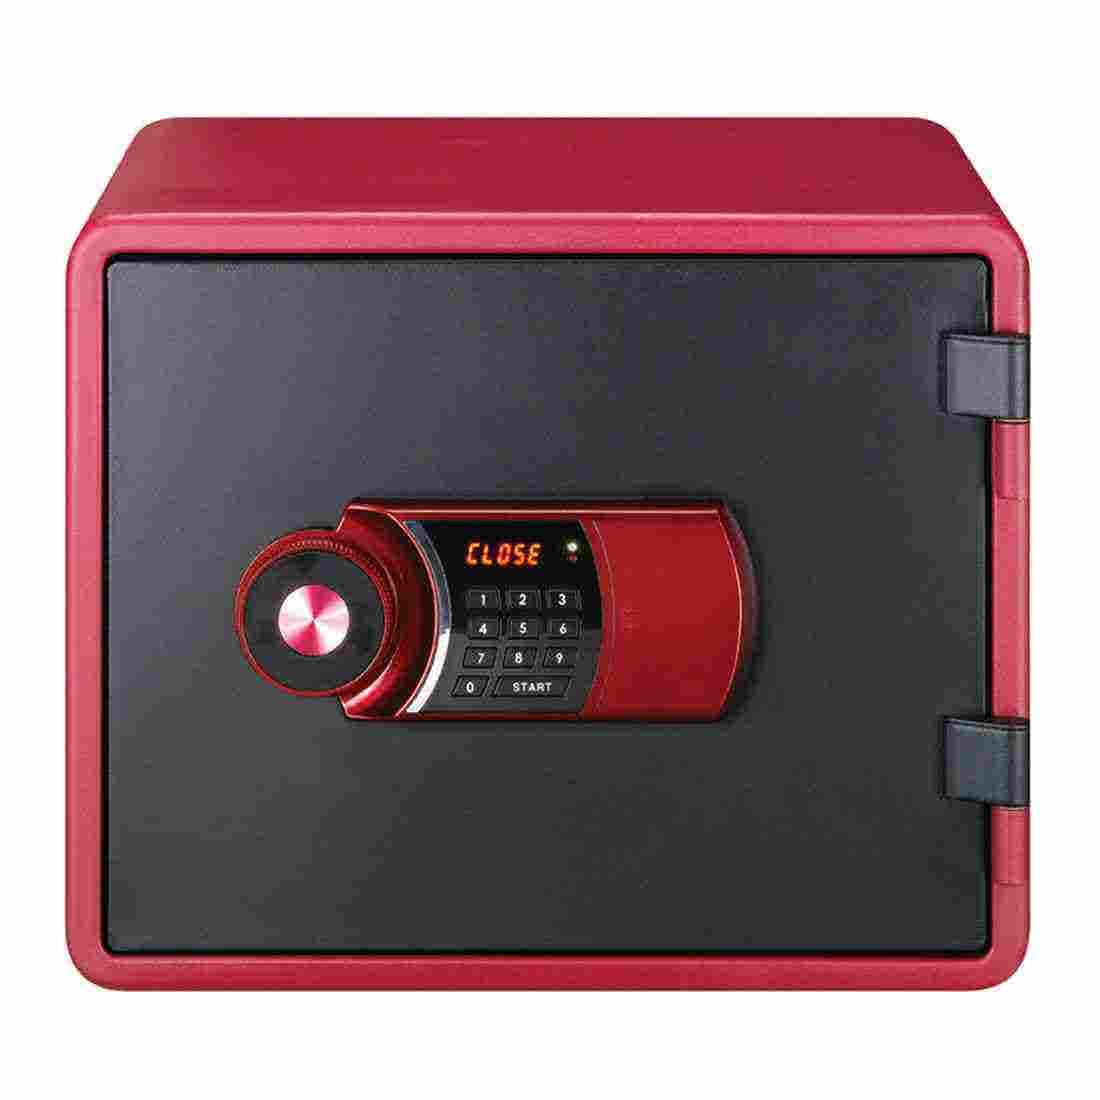 อุปกรณ์รักษาความปลอดภัยภายในบ้าน ตู้เซฟ สีสีแดง-SB Design Square